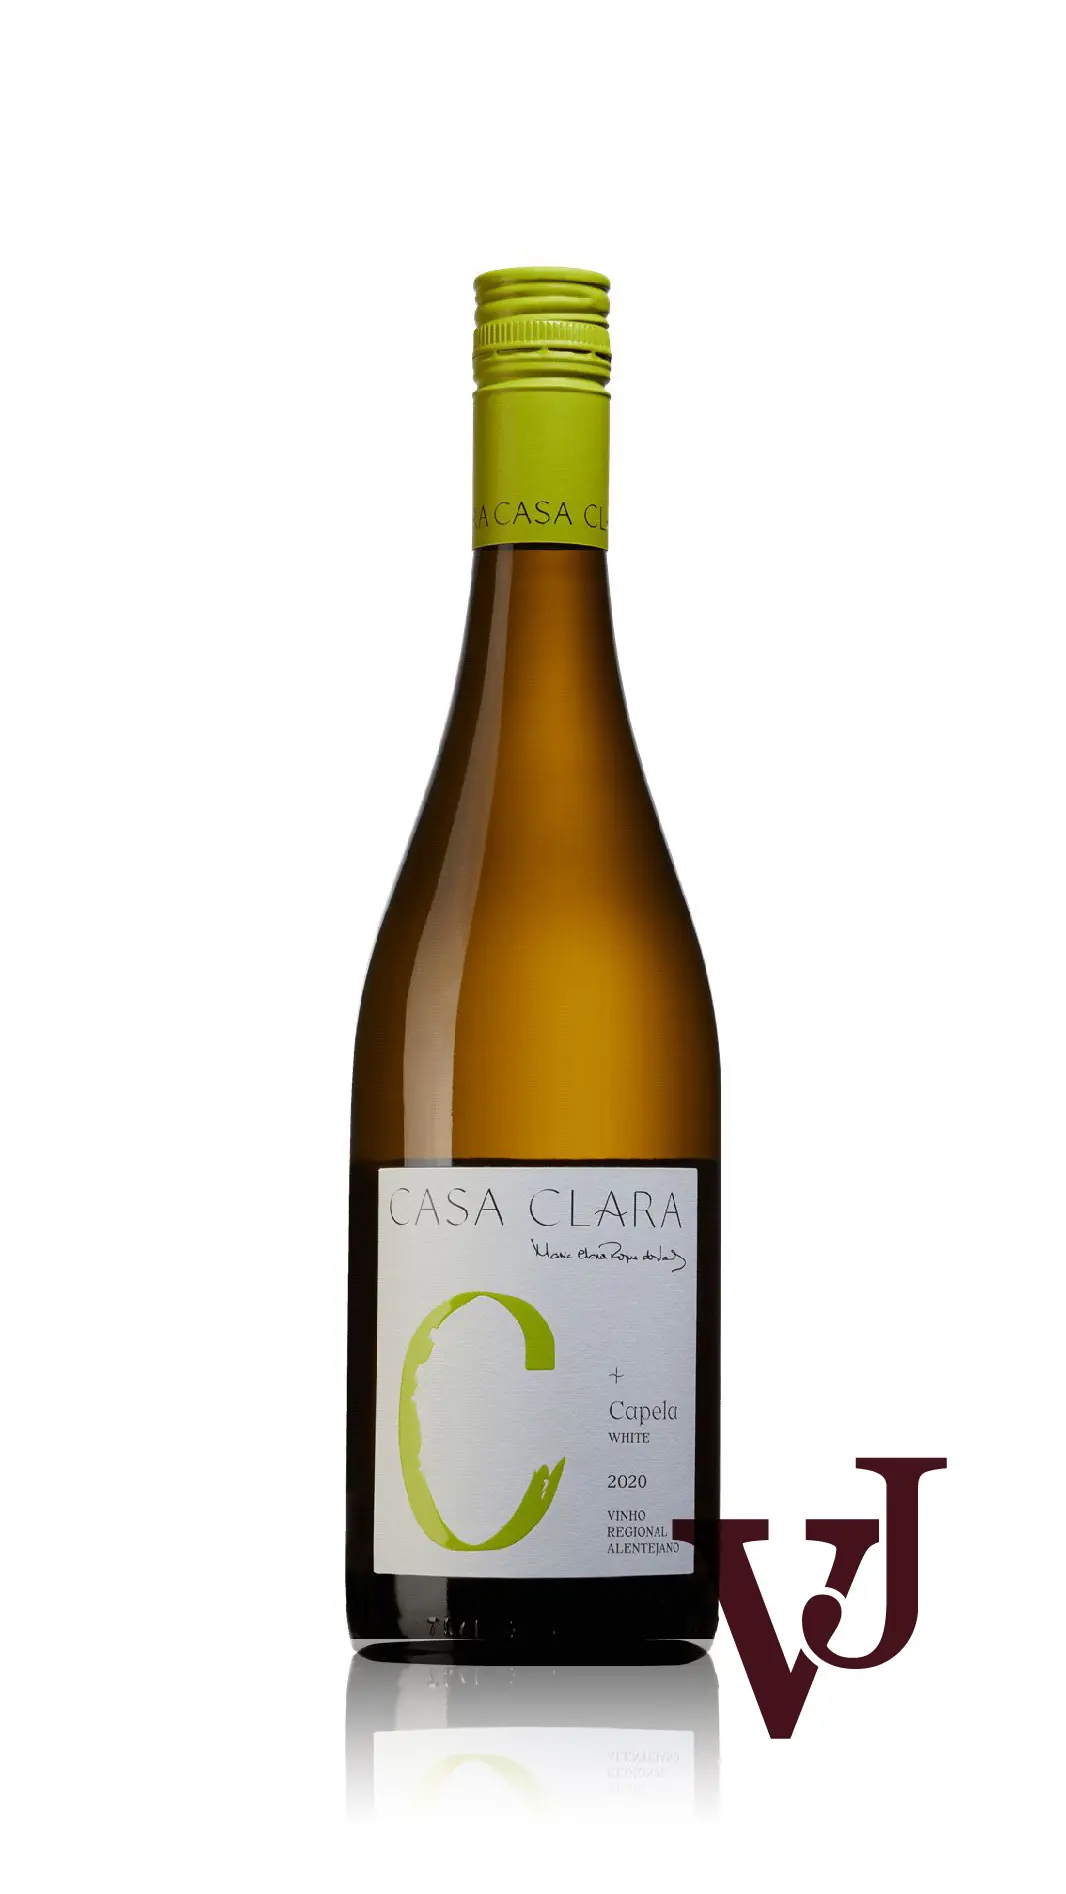 Vitt Vin - Casa Clara Capela 2020 artikel nummer 212401 från producenten Casa Clara från området Portugal - Vinjournalen.se